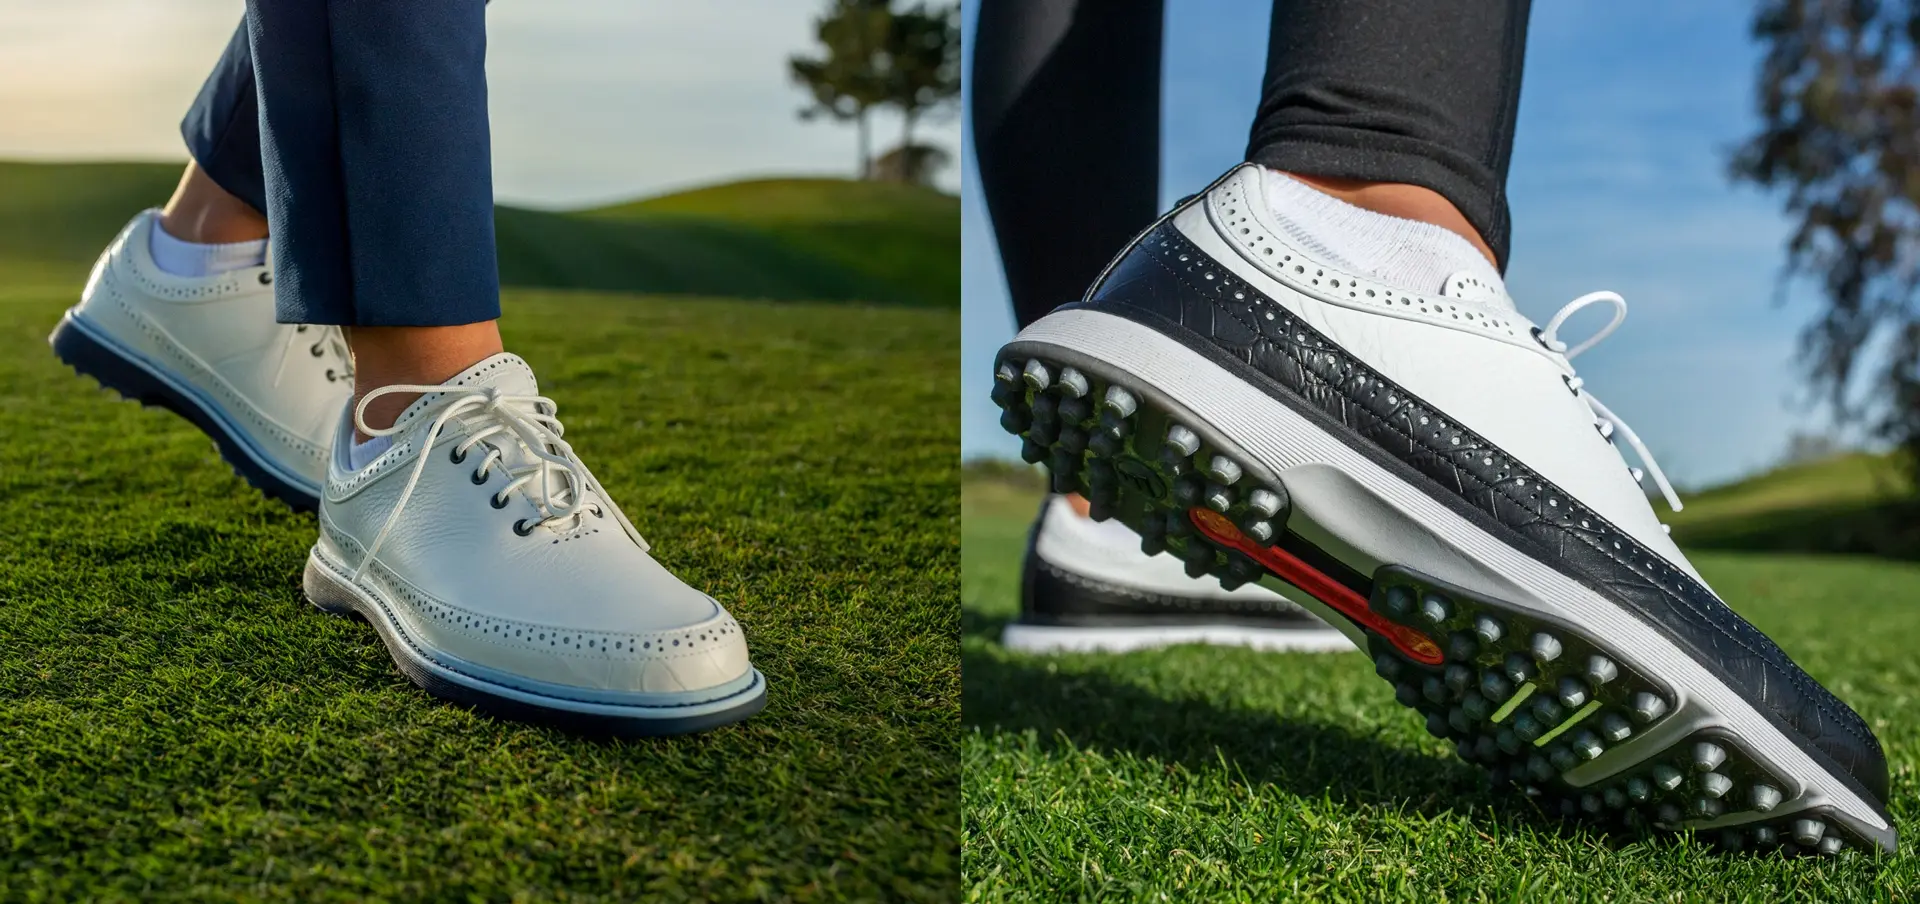 Estos zapatos de golf de Adidas reviven el estilo clásico